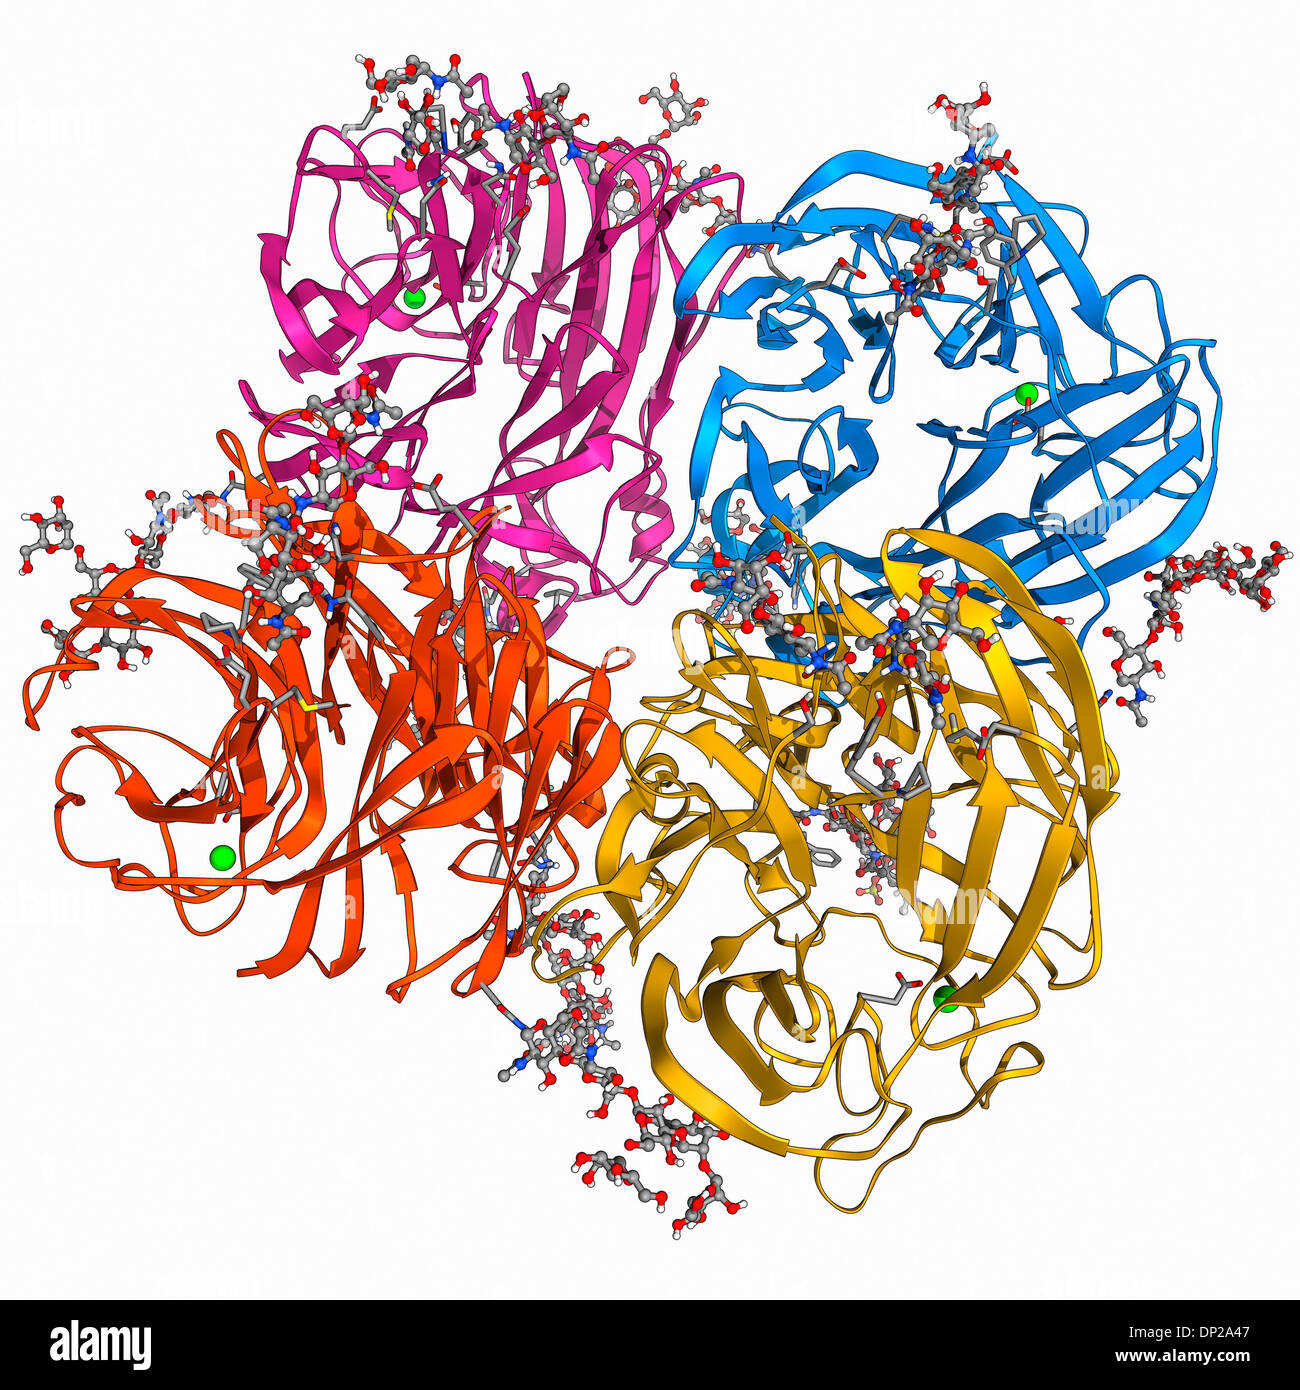 Flu virus surface protein molecule Stock Photo